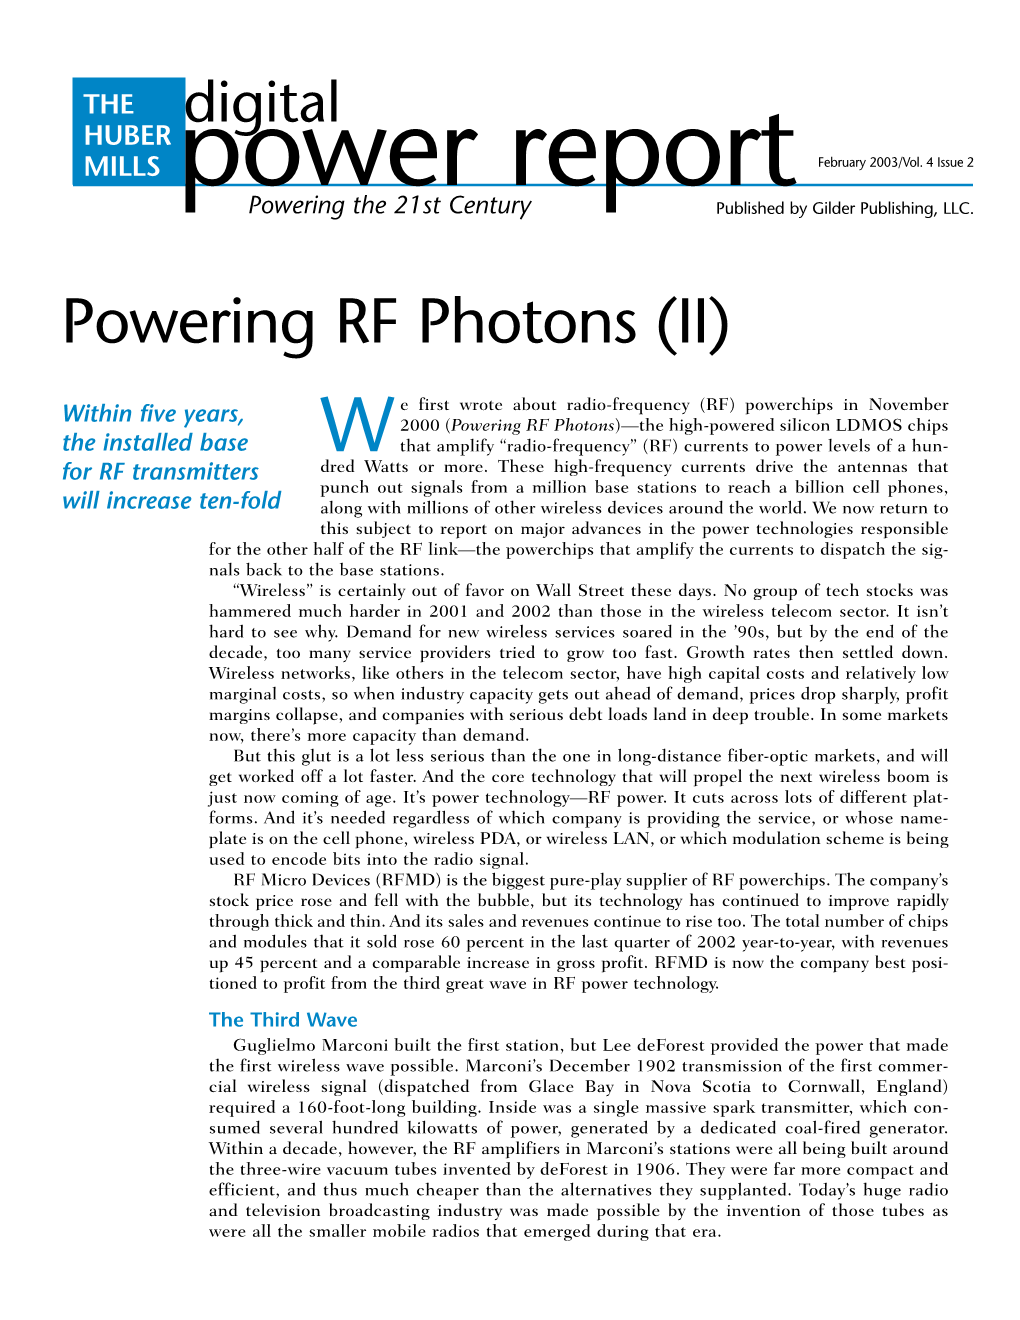 Powering RF Photons (II)